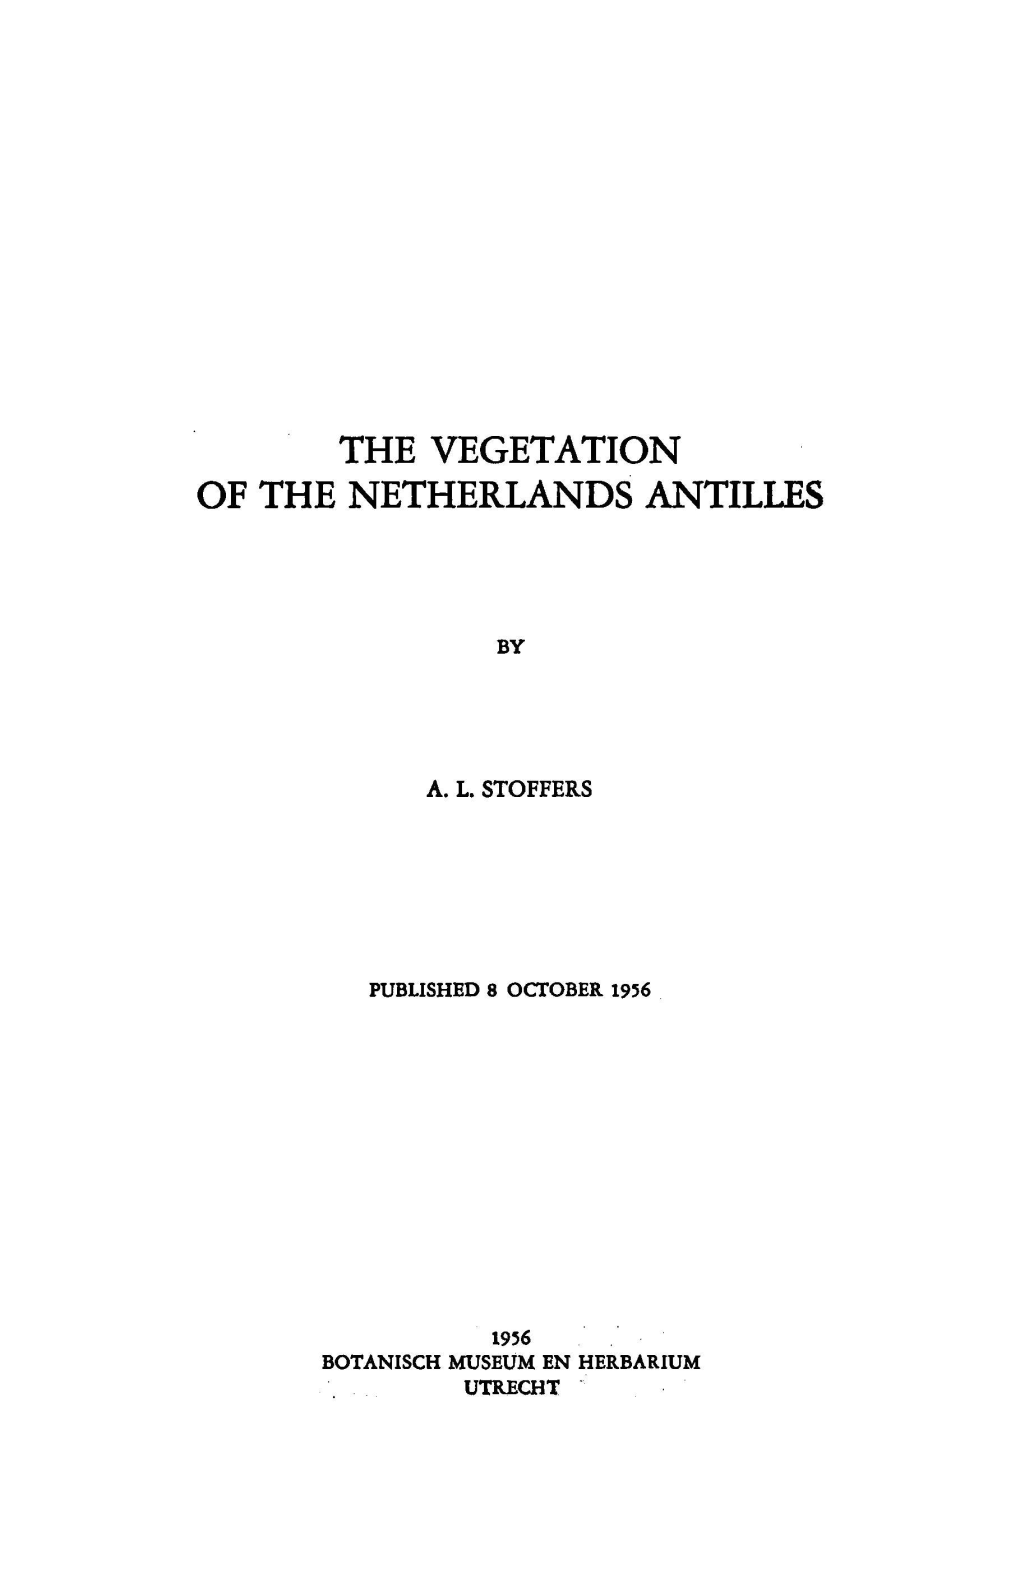 The Vegetation of the Netherlands Antilles